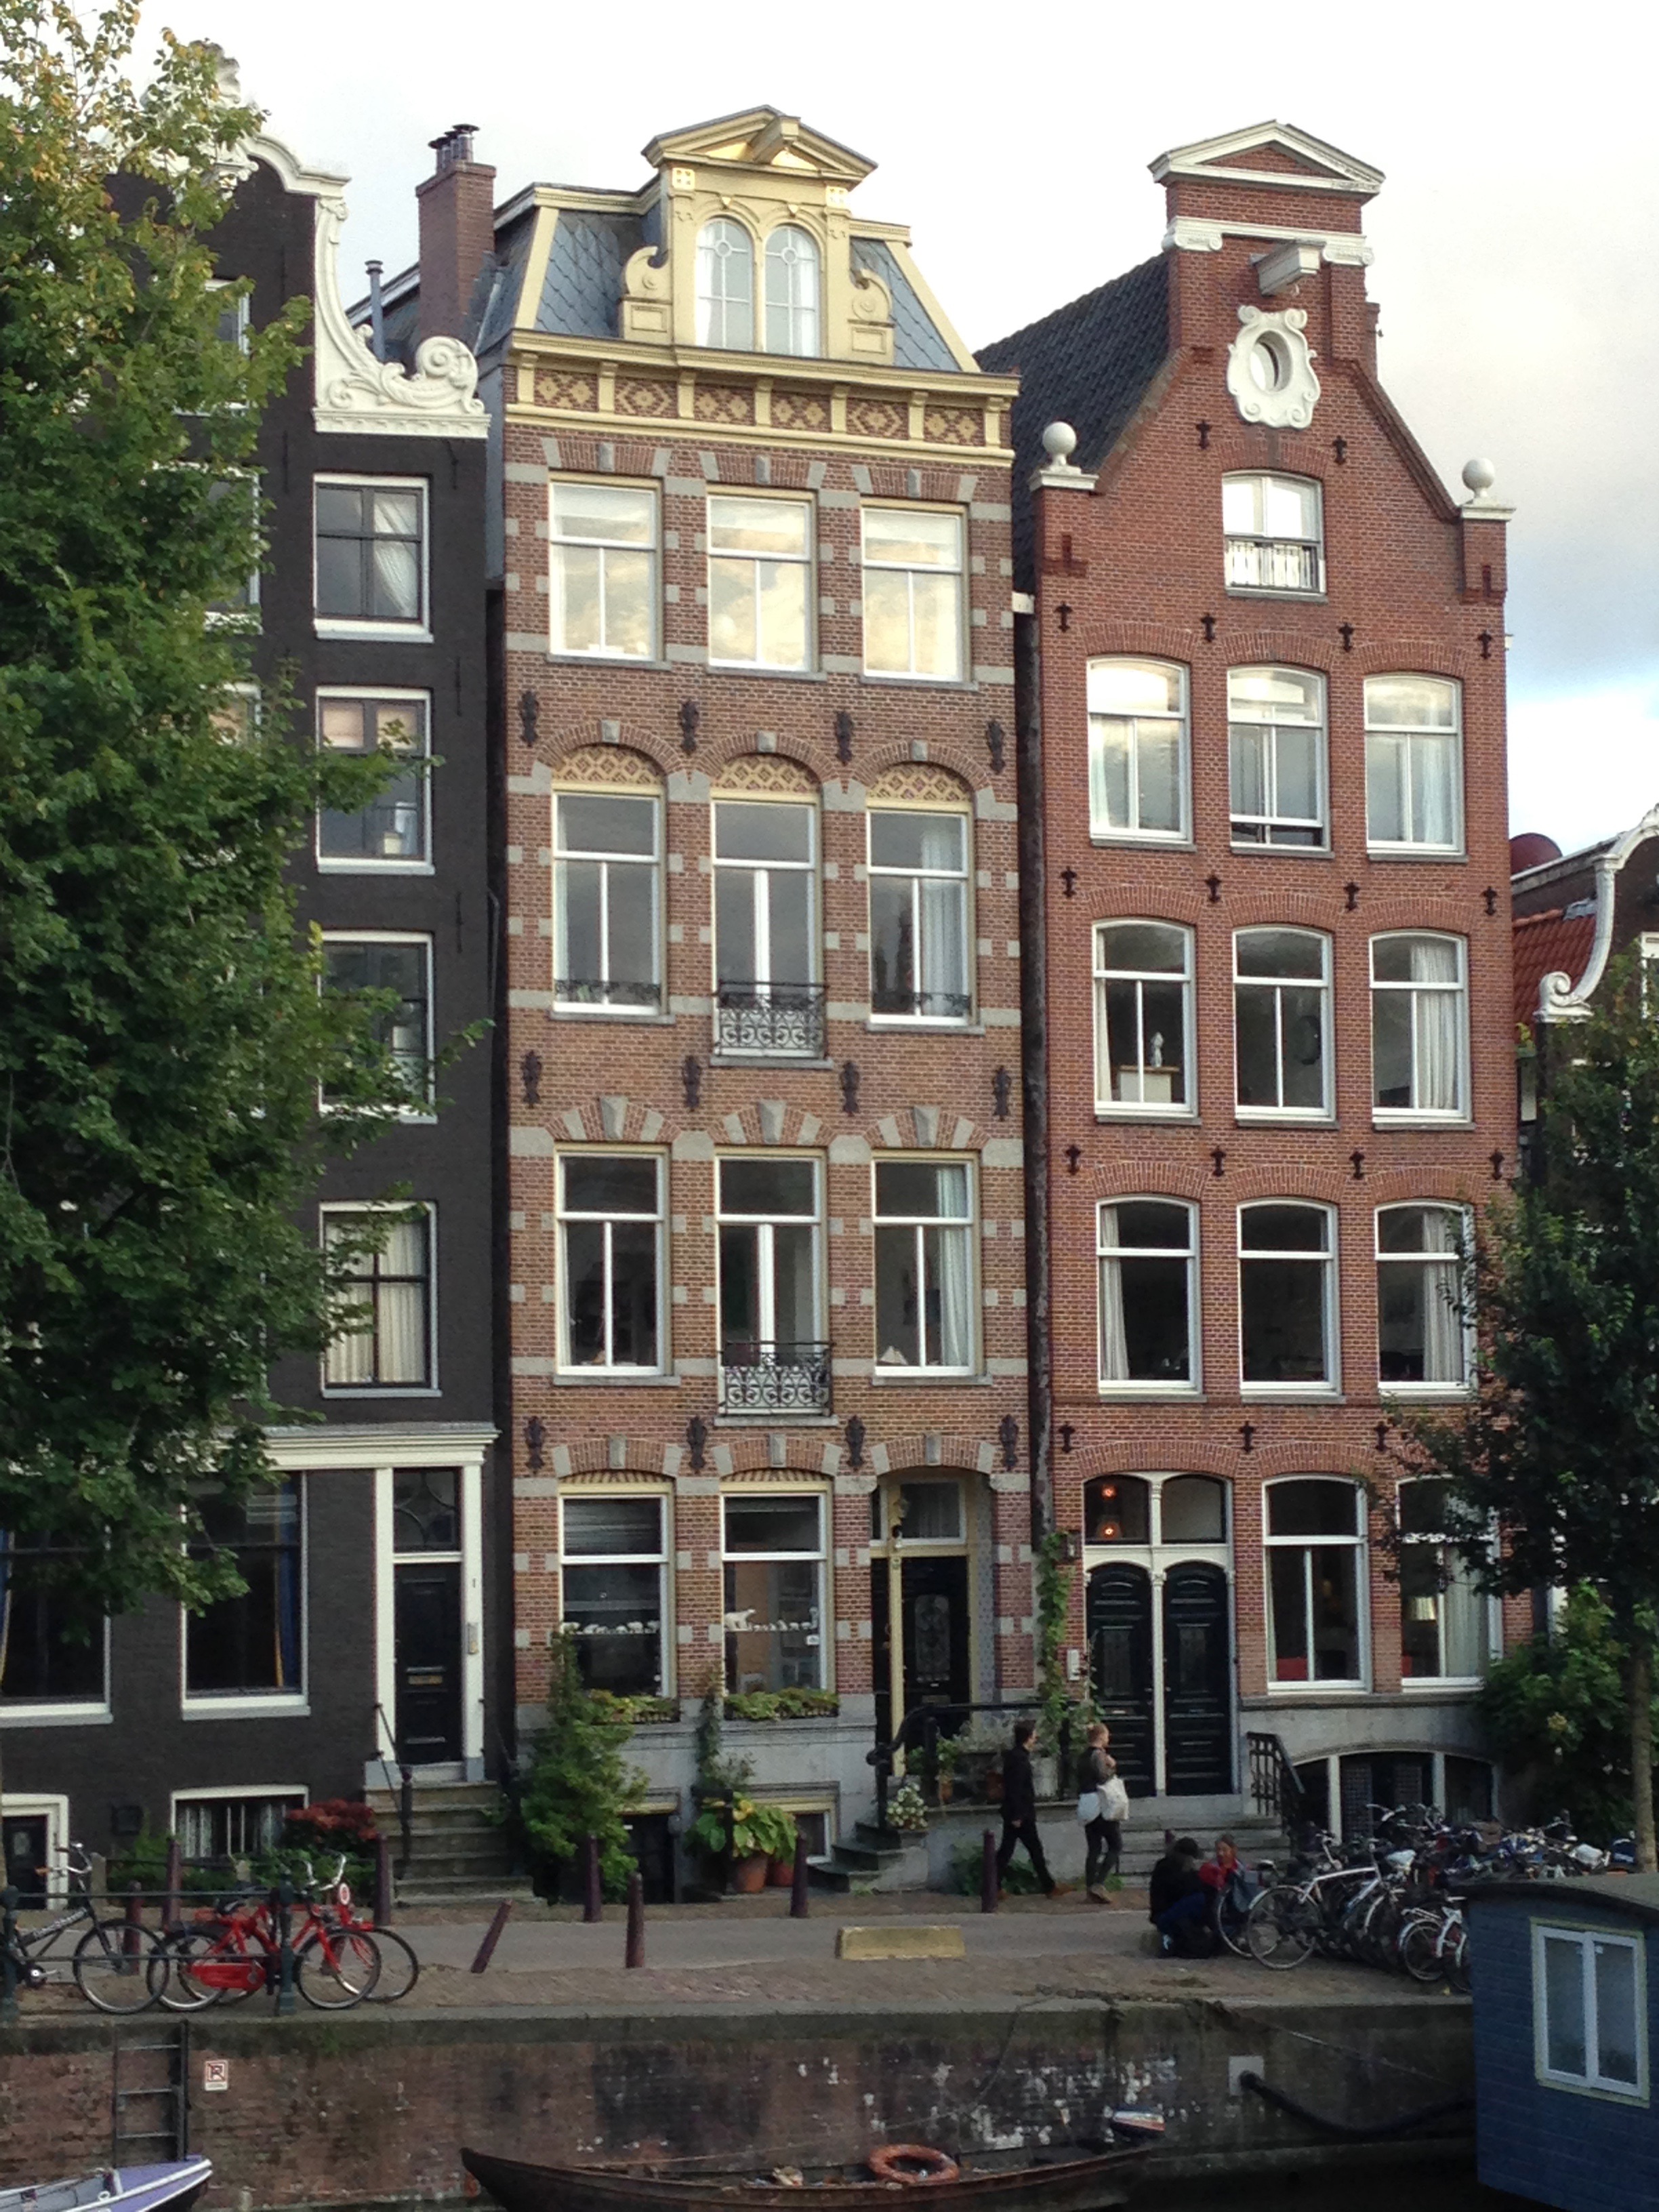 Mijn overgrootmoeder Mathilde Geesink (1865-1942) is geboren in dit huis aan de Herengracht 3 in Amsterdam (foto 2014). Haar ouders zijn hier als jong stel komen wonen en hadden in eerste instantie het onderste deel in bezit. Vrij snel daarna kochten ze het gehele pand. Het huis staat beschreven in het boek 